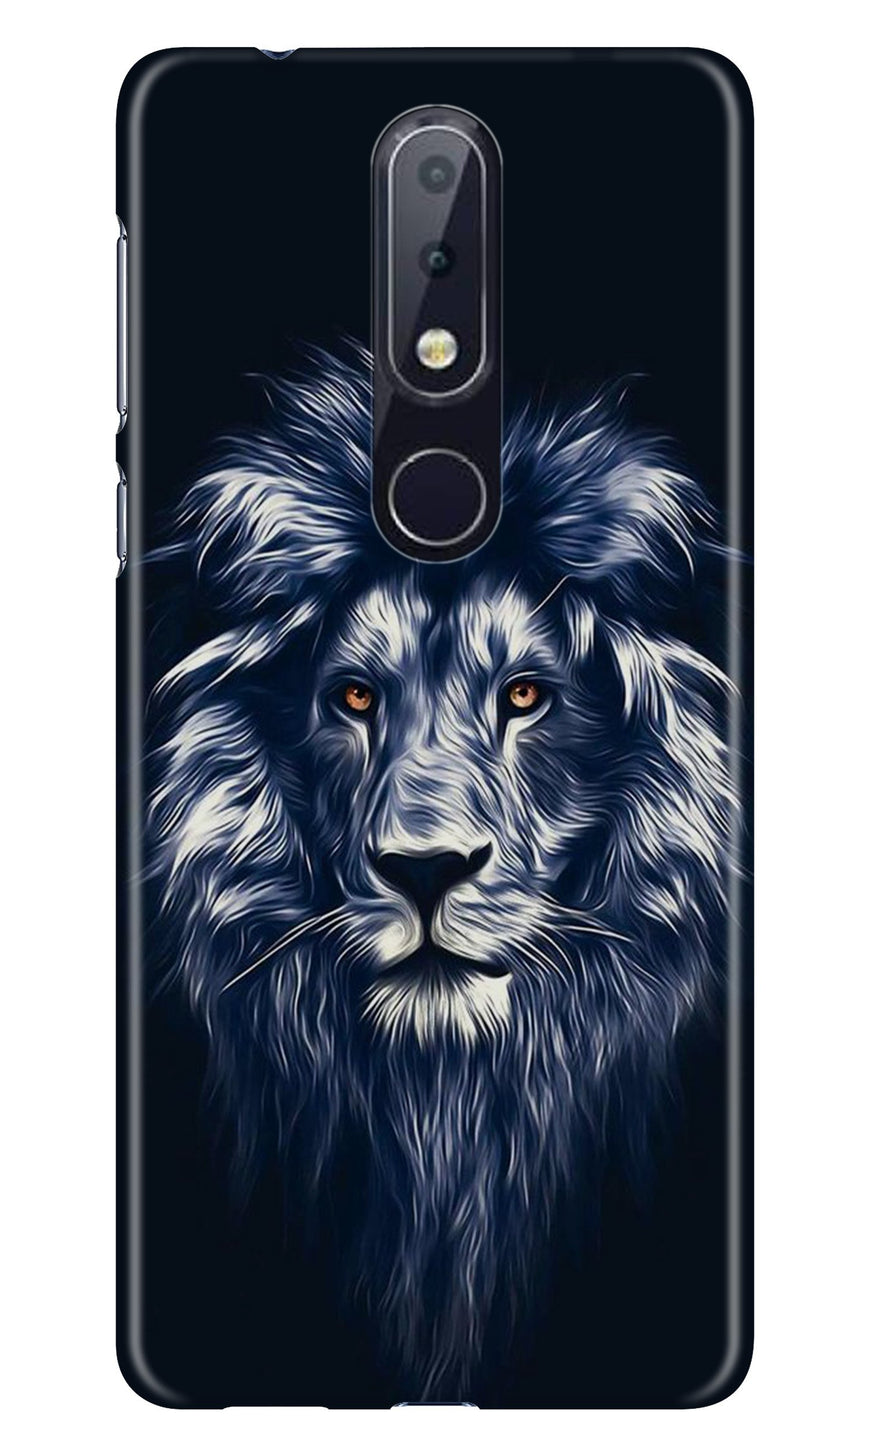 Lion  Case for Nokia 7.1 (Design No. 281)